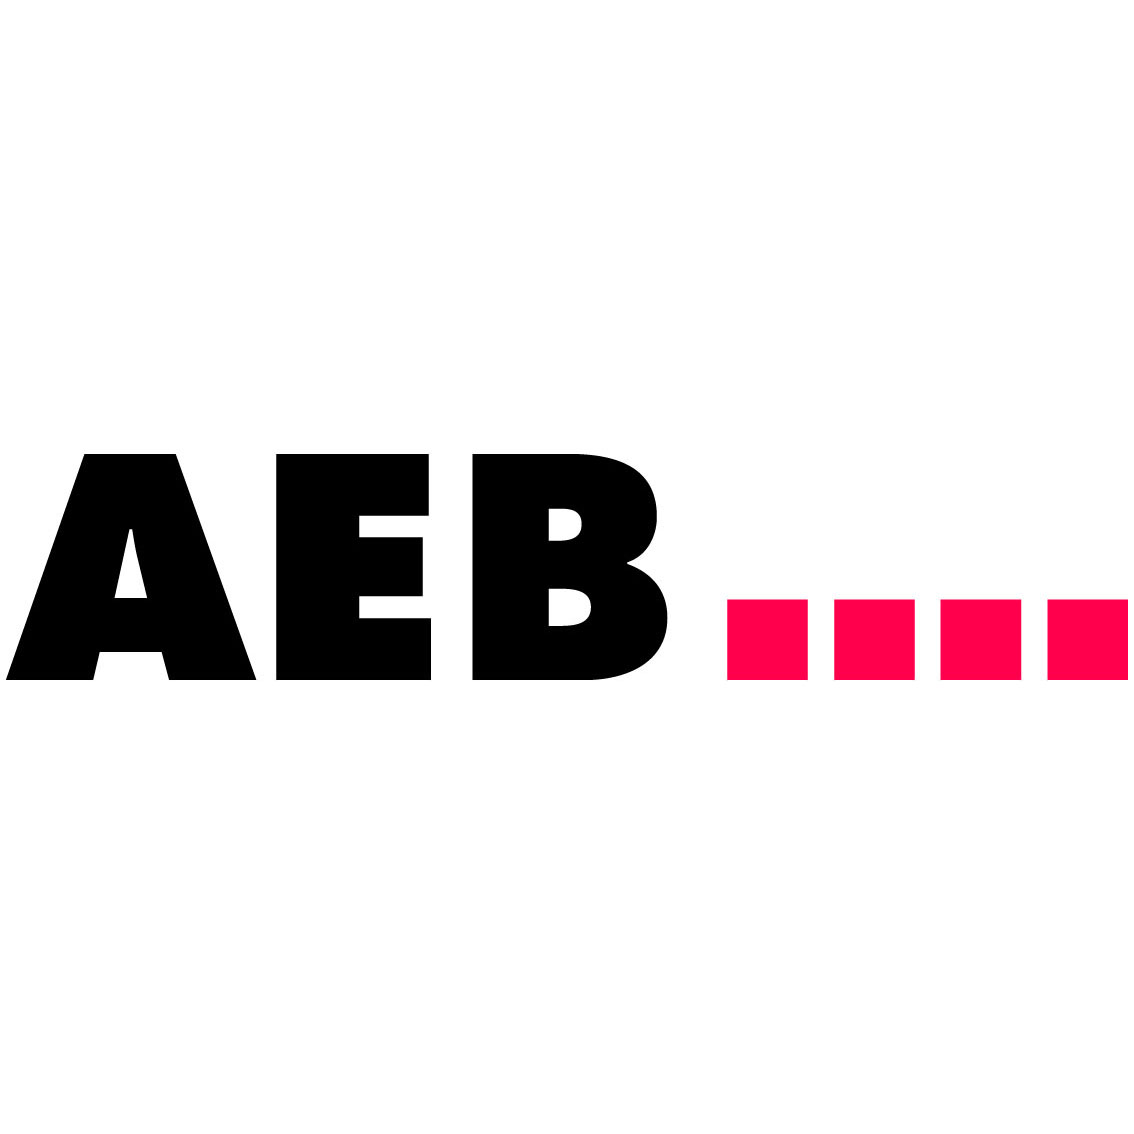 aeb logo